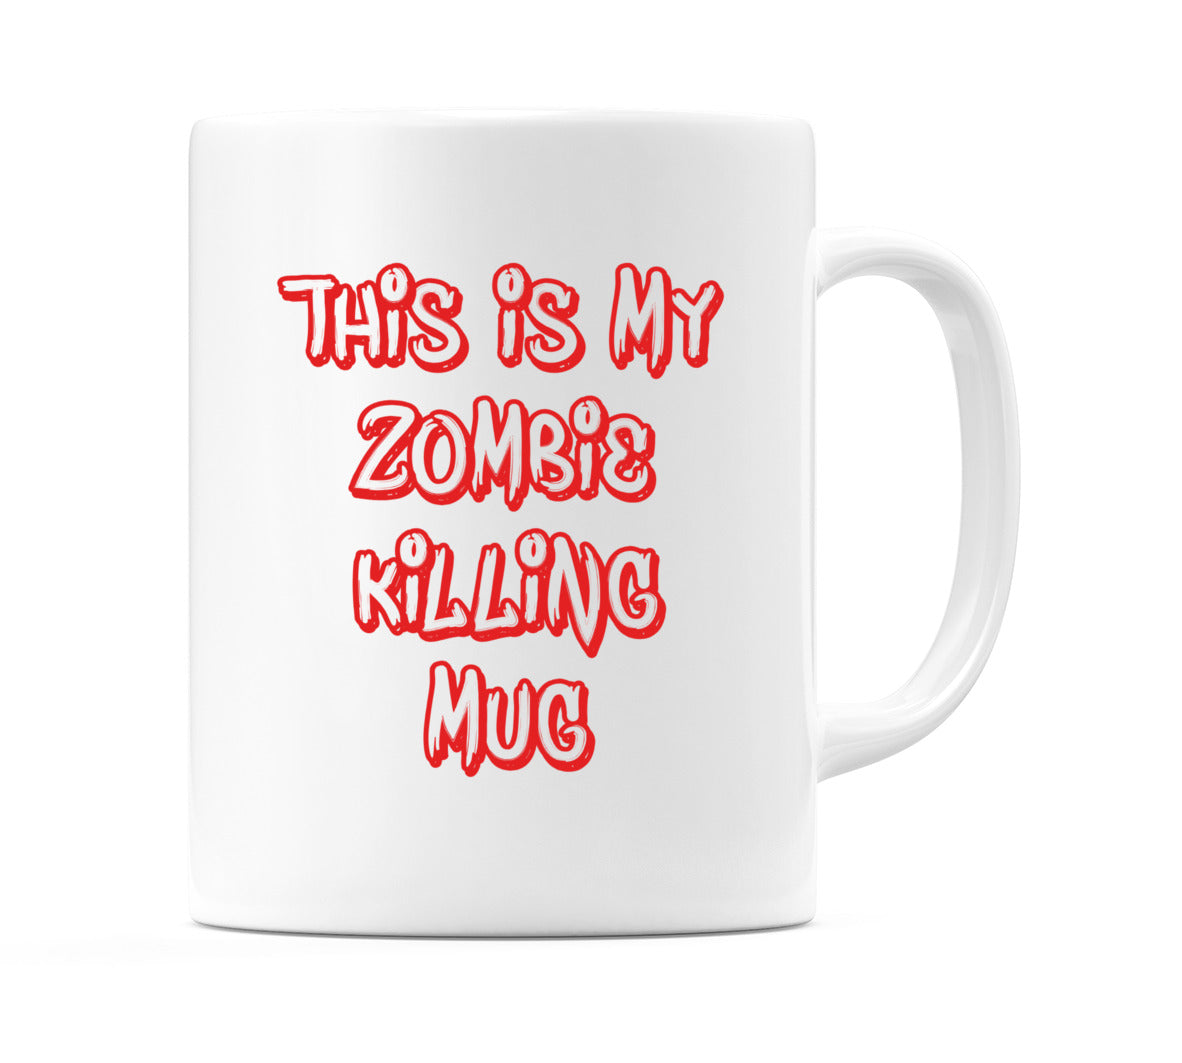 This Is My Zombie Killing Mug Mug